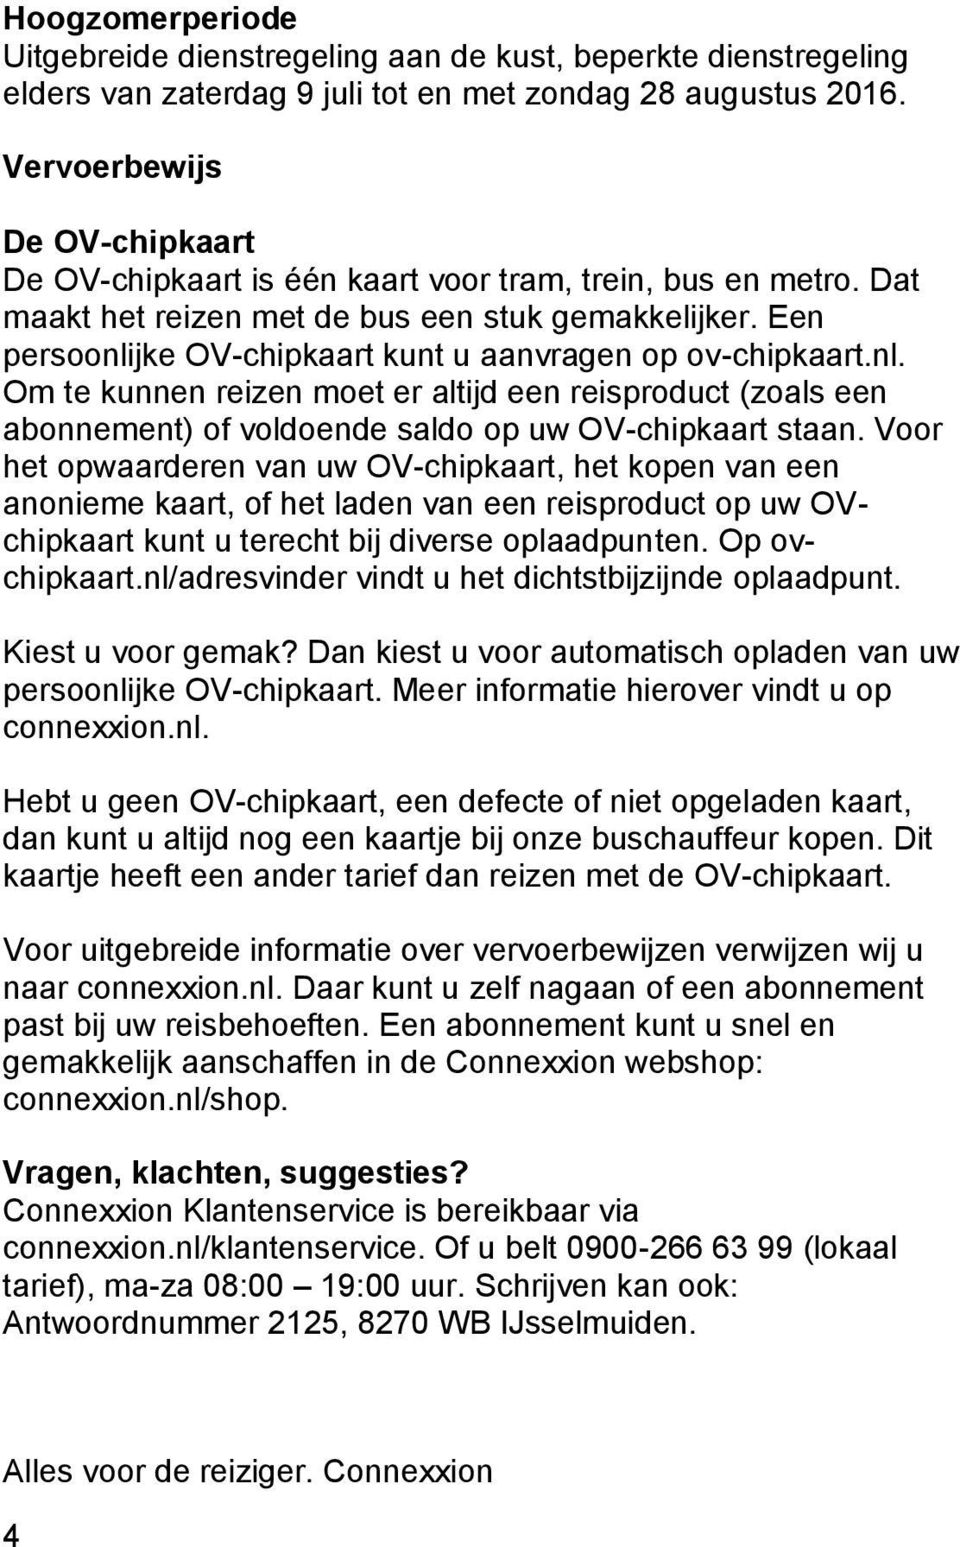 Een persoonlijke OV-chipkaart kunt u aanvragen op ov-chipkaart.nl. Om te kunnen reizen moet er altijd een reisproduct (zoals een abonnement) of voldoende saldo op uw OV-chipkaart staan.